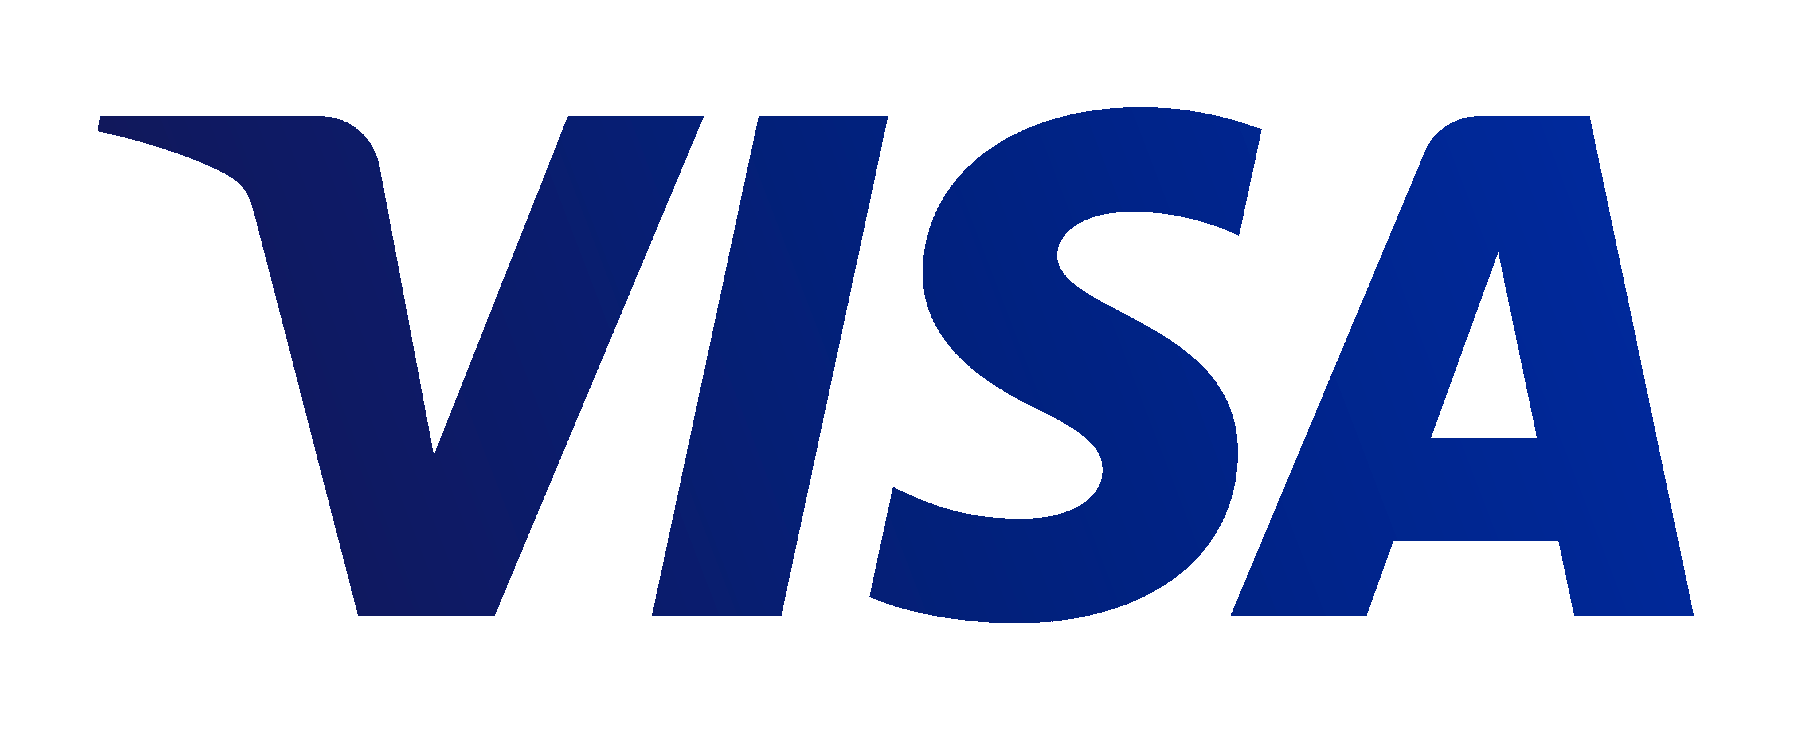 Verified By Visa Logo - Verif